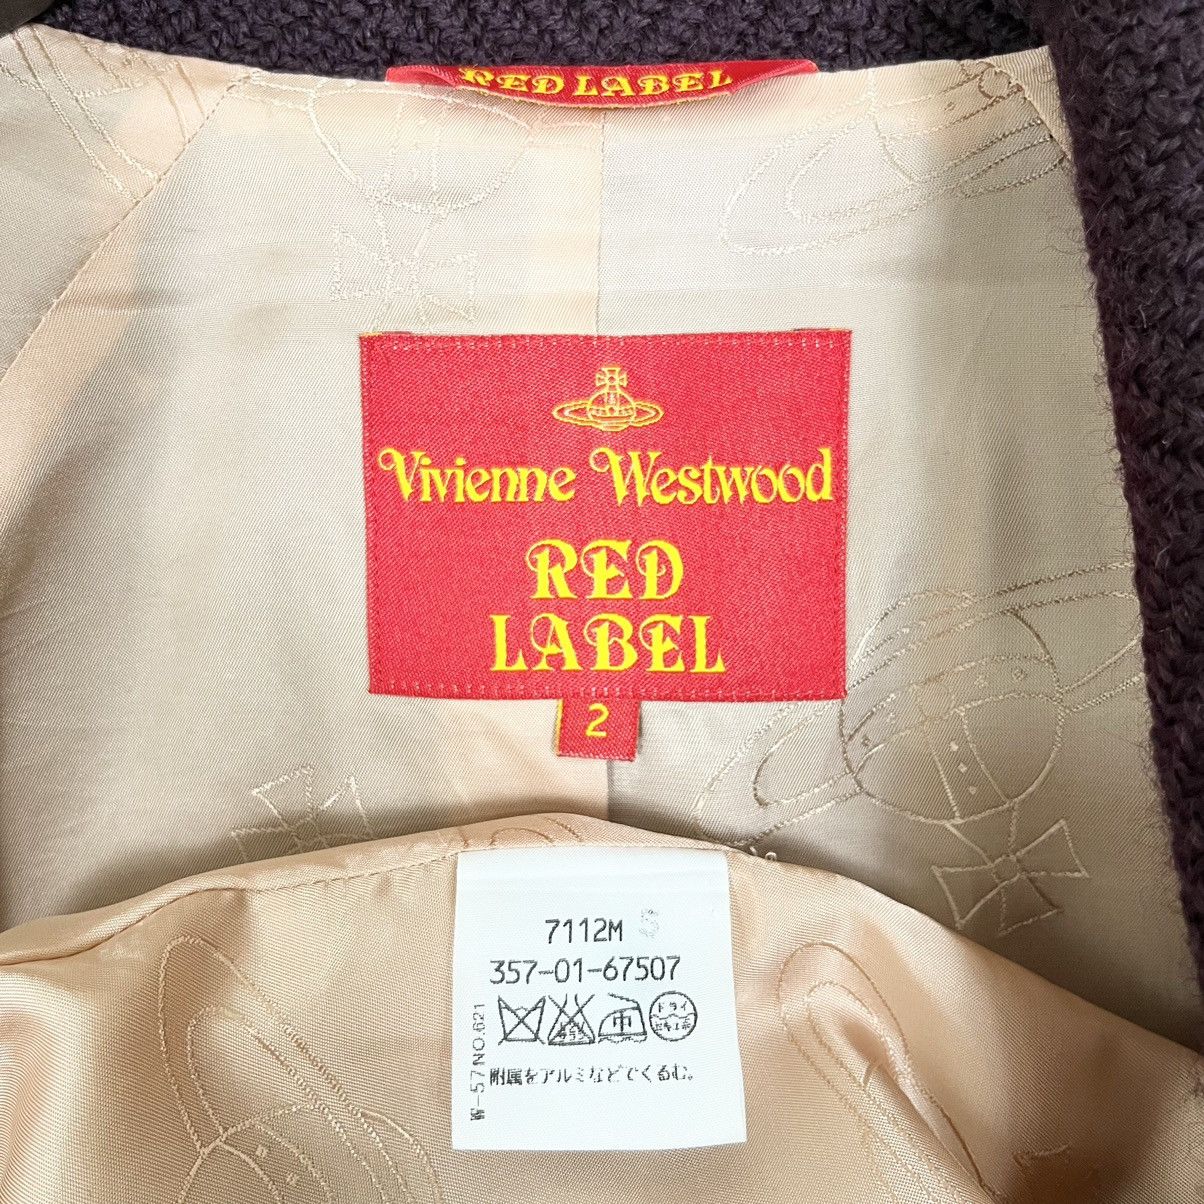 Vivienne Westwood Vivienne Westwood Red Label Pea Coat Size M / US 6-8 / IT 42-44 - 8 Thumbnail